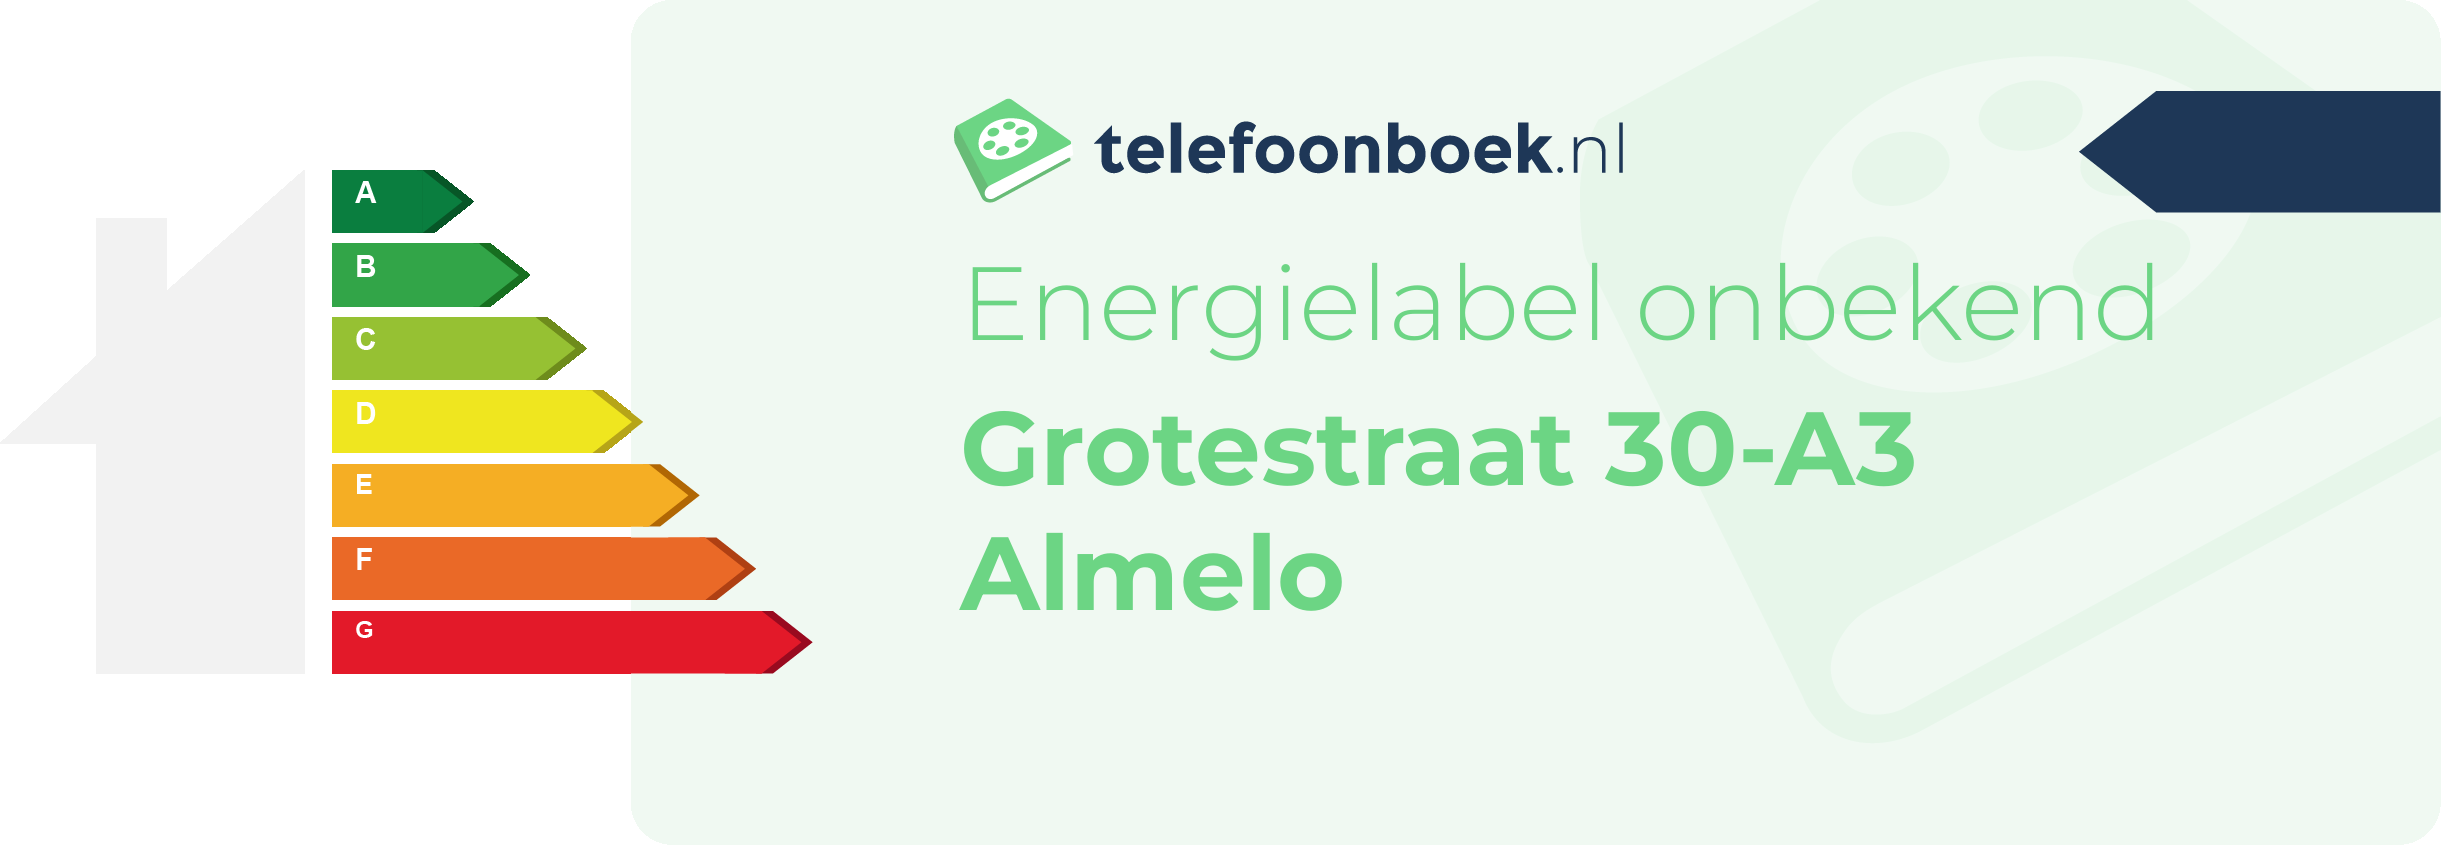 Energielabel Grotestraat 30-A3 Almelo